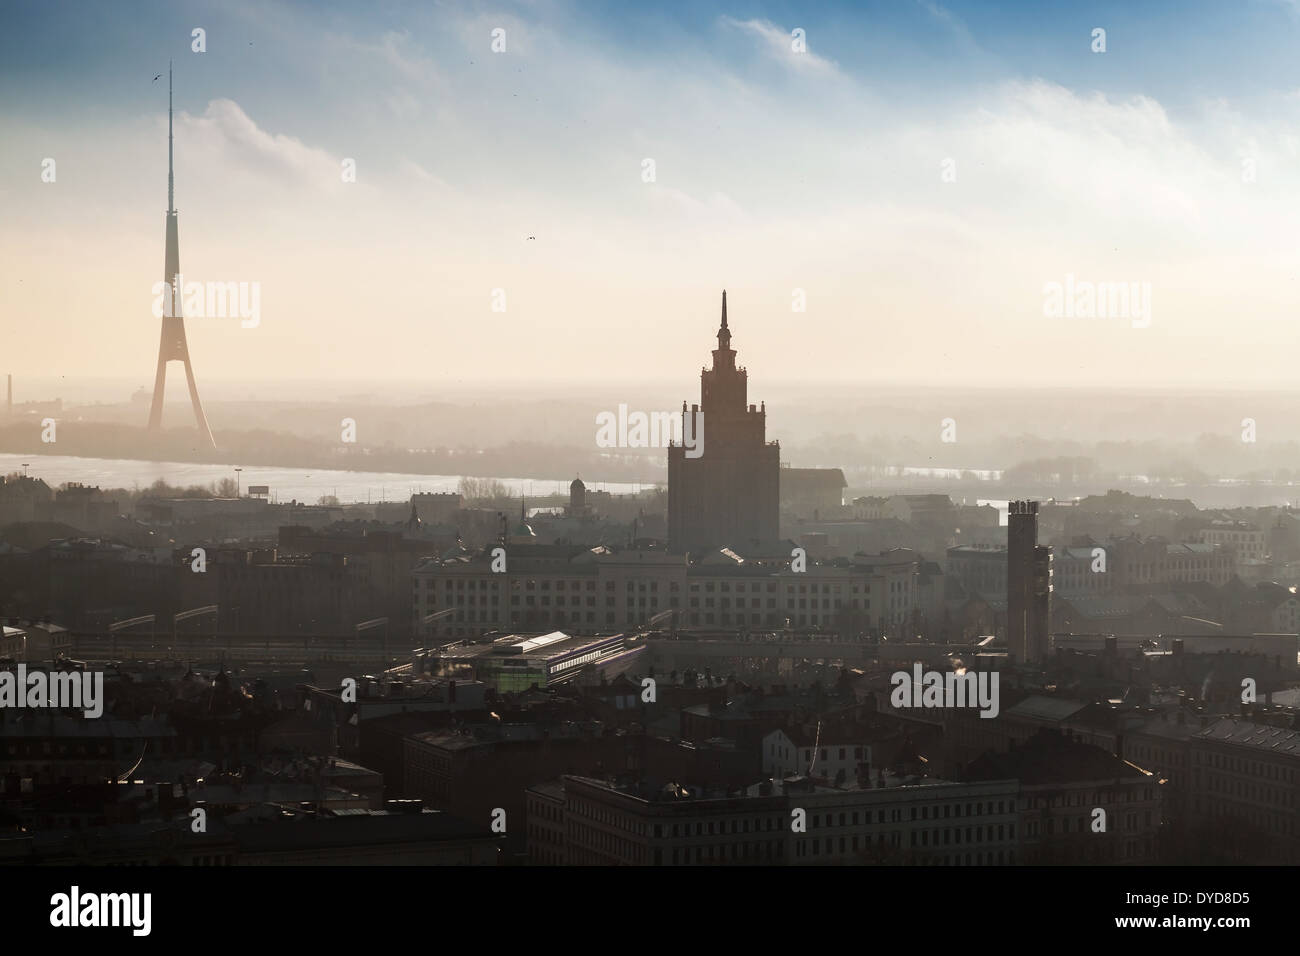 RIGA, Lettonie - 31 décembre 2013 : panorama urbain de la ville de Riga avec grand living house et la tour de télévision dans le brouillard Banque D'Images